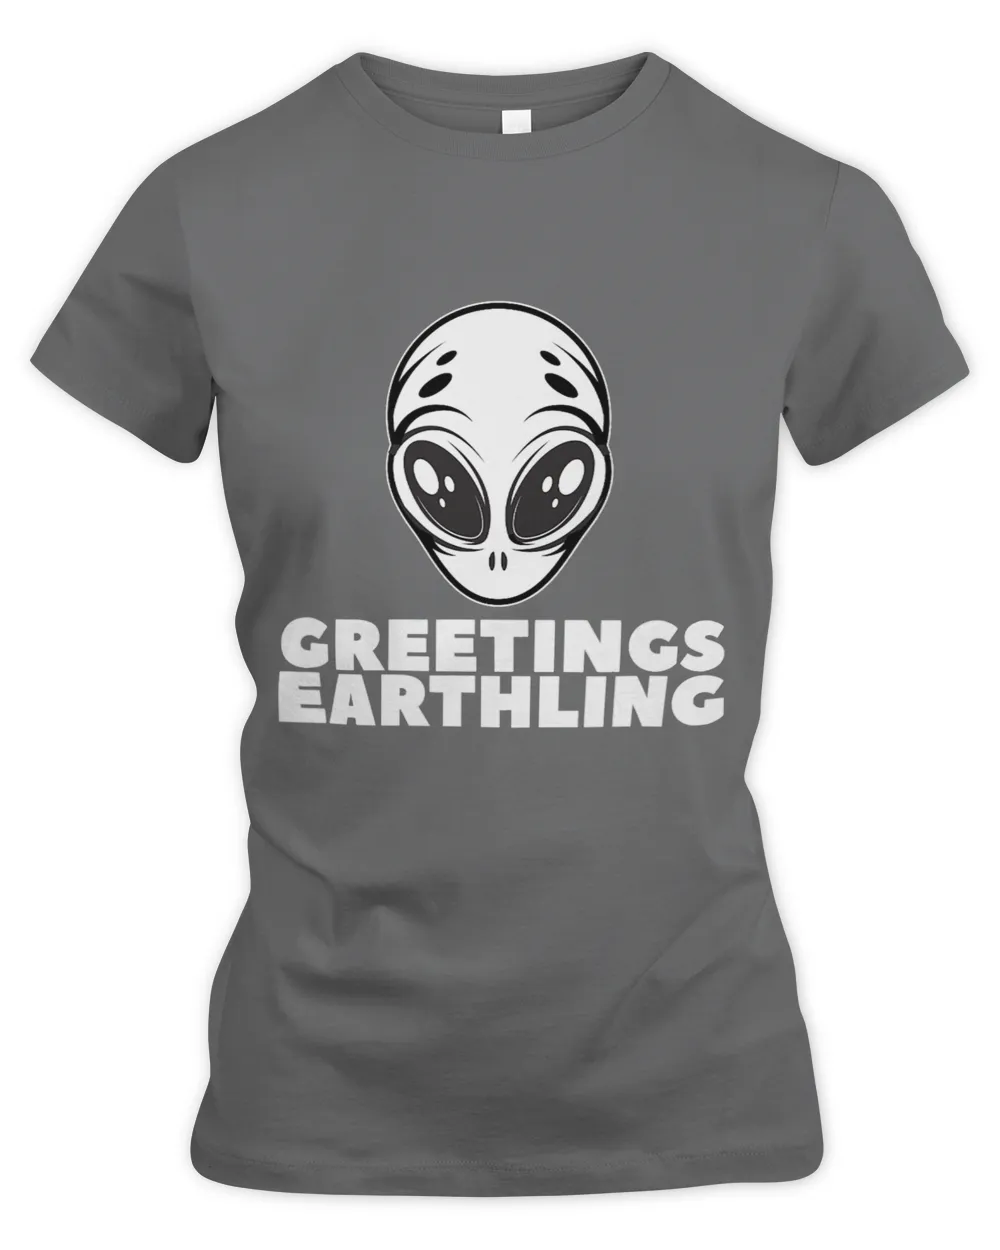 Greetings Earthling Funny Alien for Men Women Teens 21